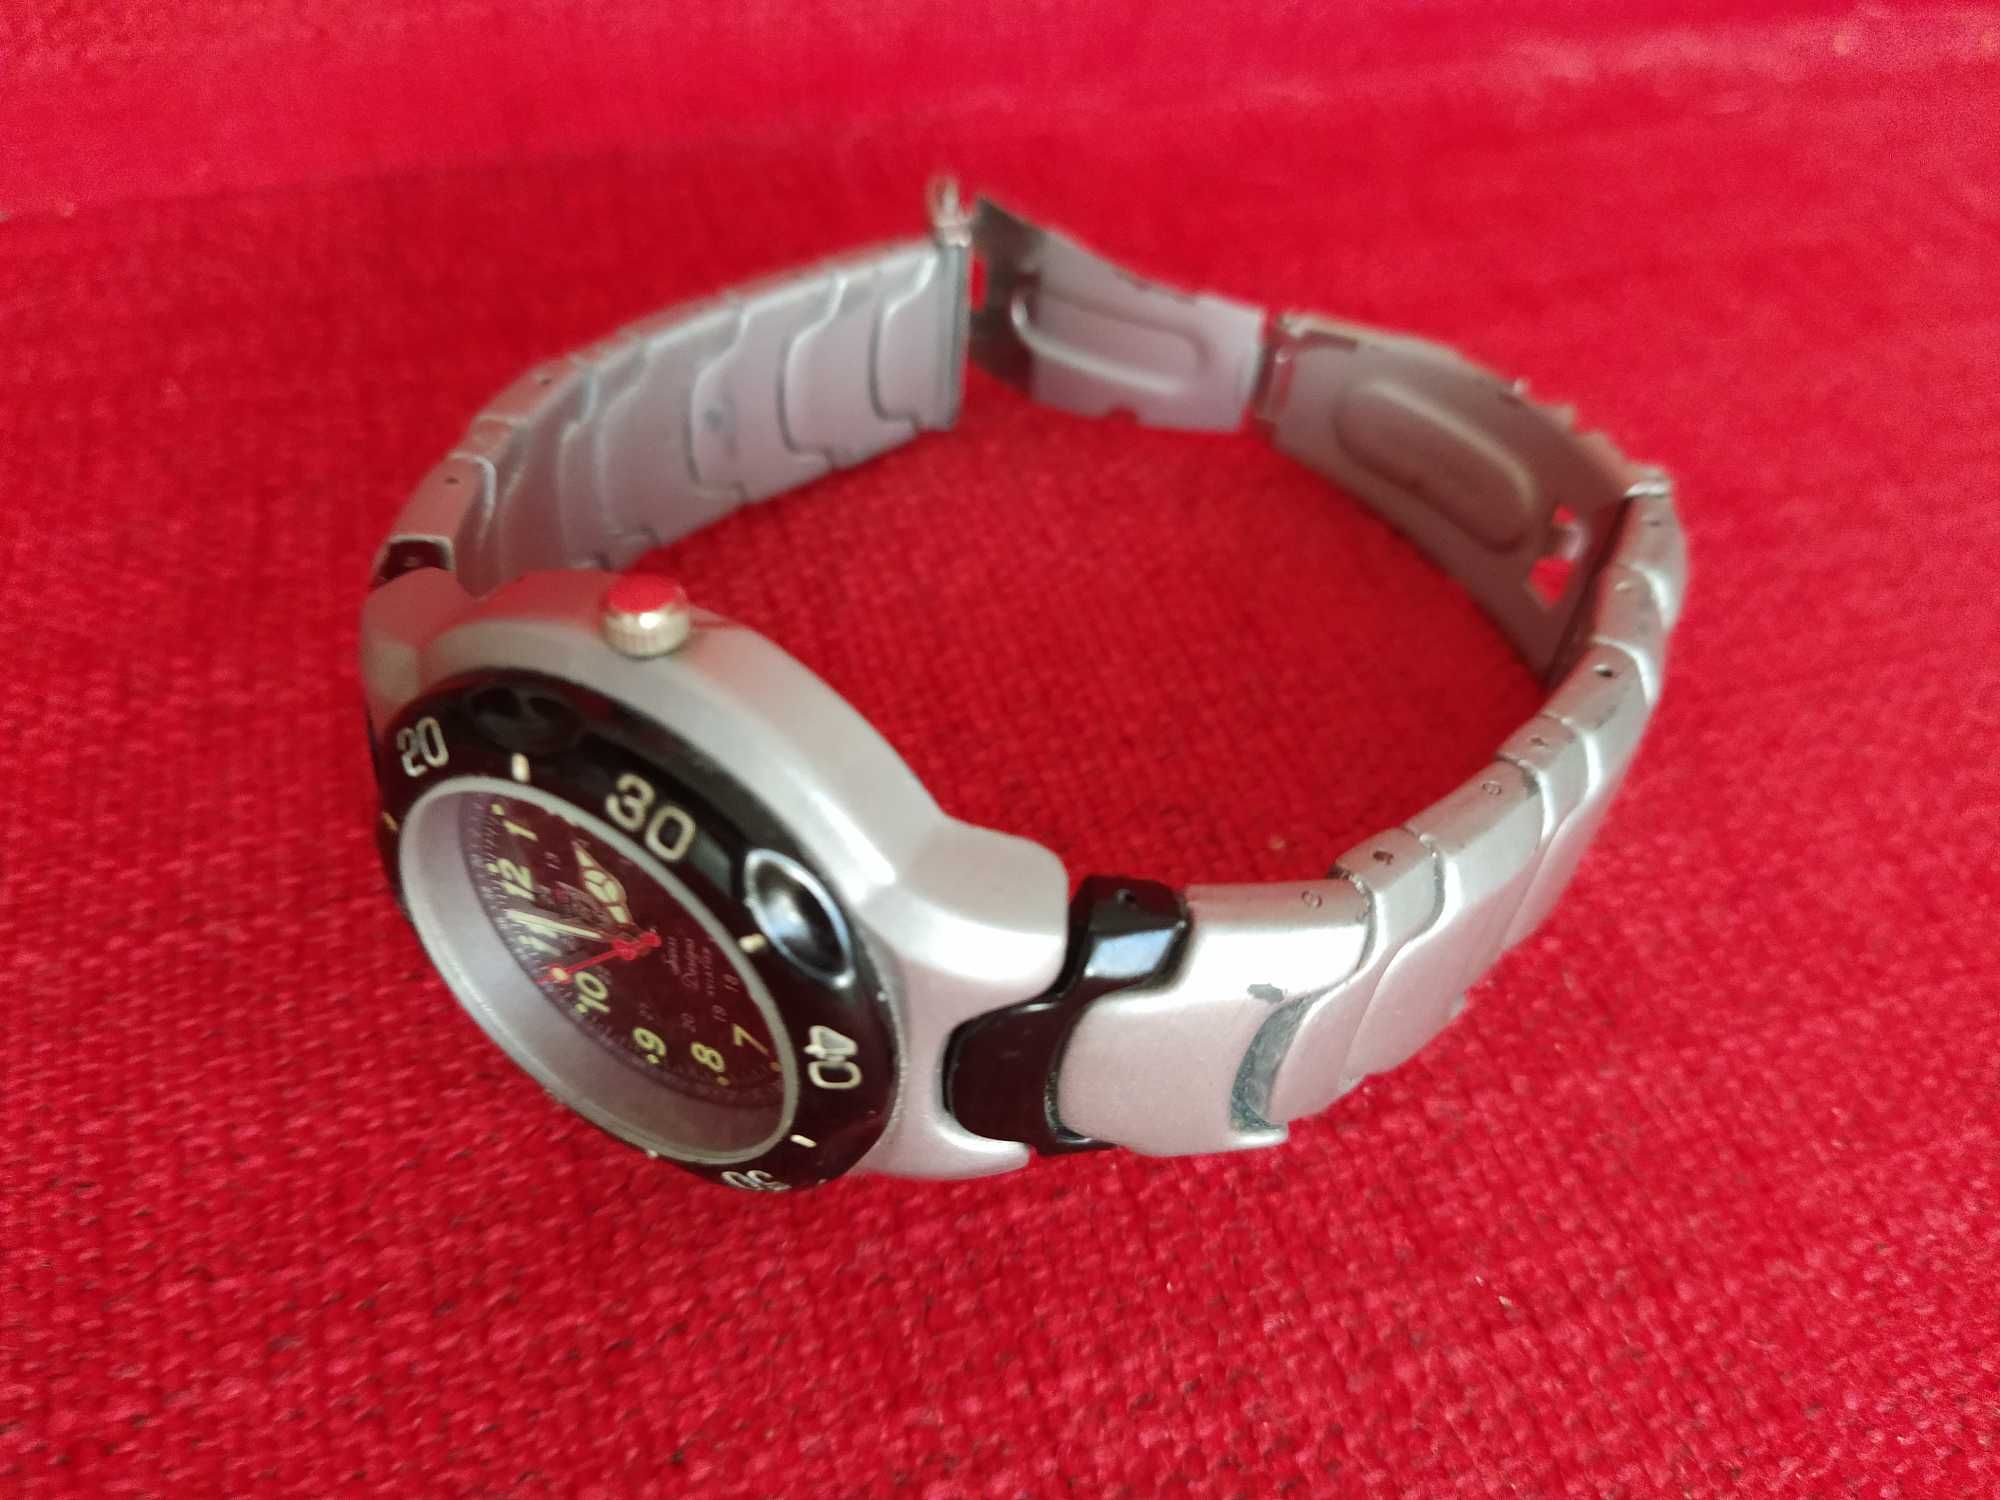 Relógio pulso Aviator Japan MOVT nickel free - bracelete original